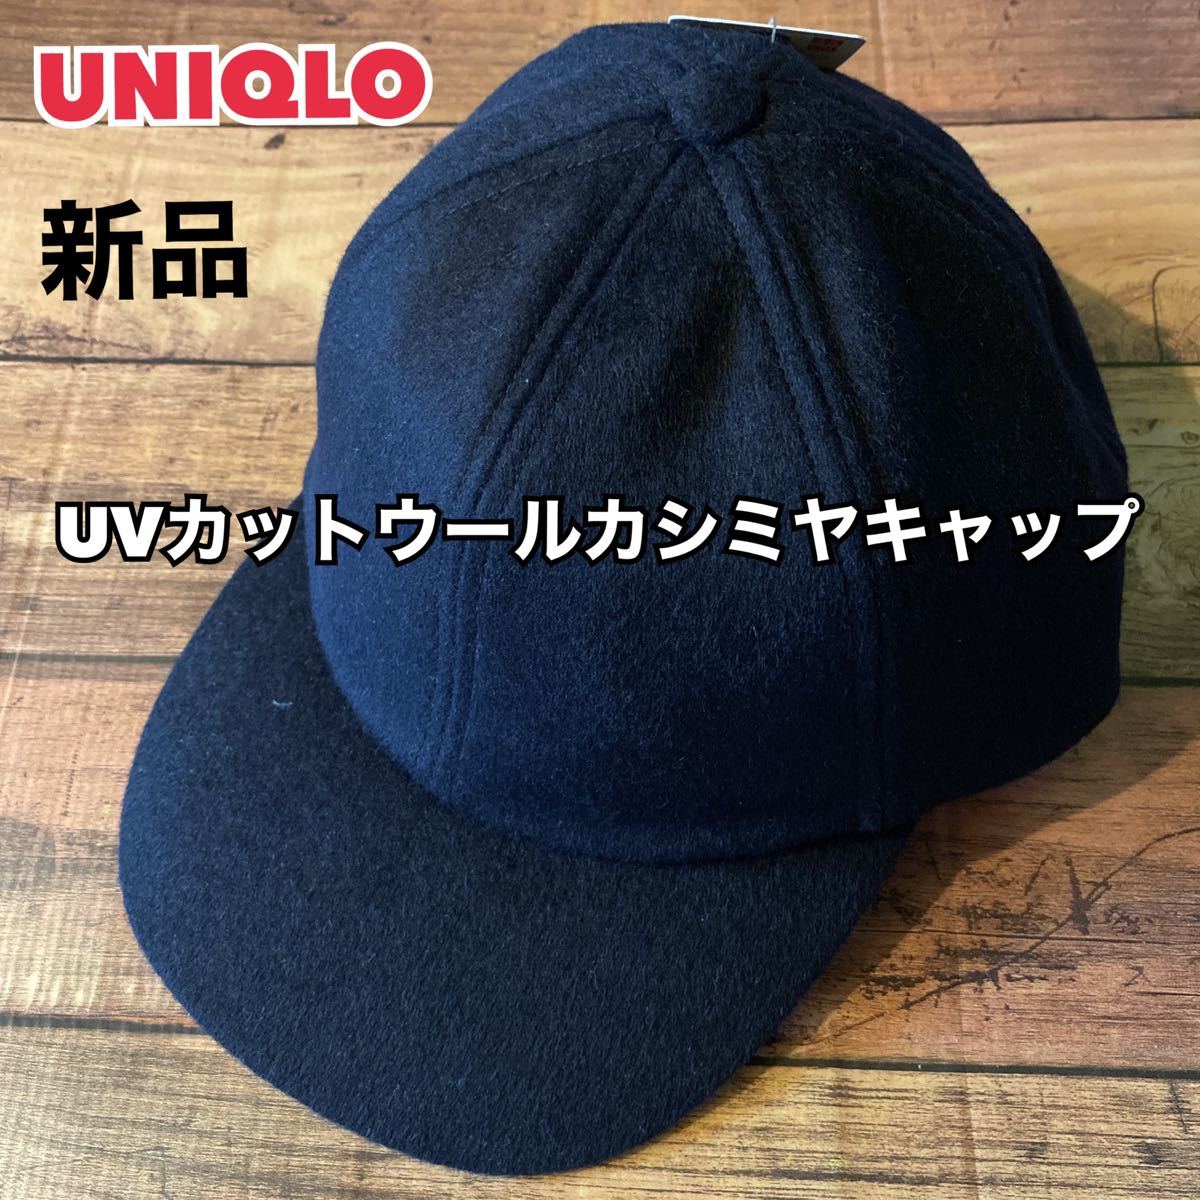 UNIQLO UVカットウールカシミヤキャップ - 帽子